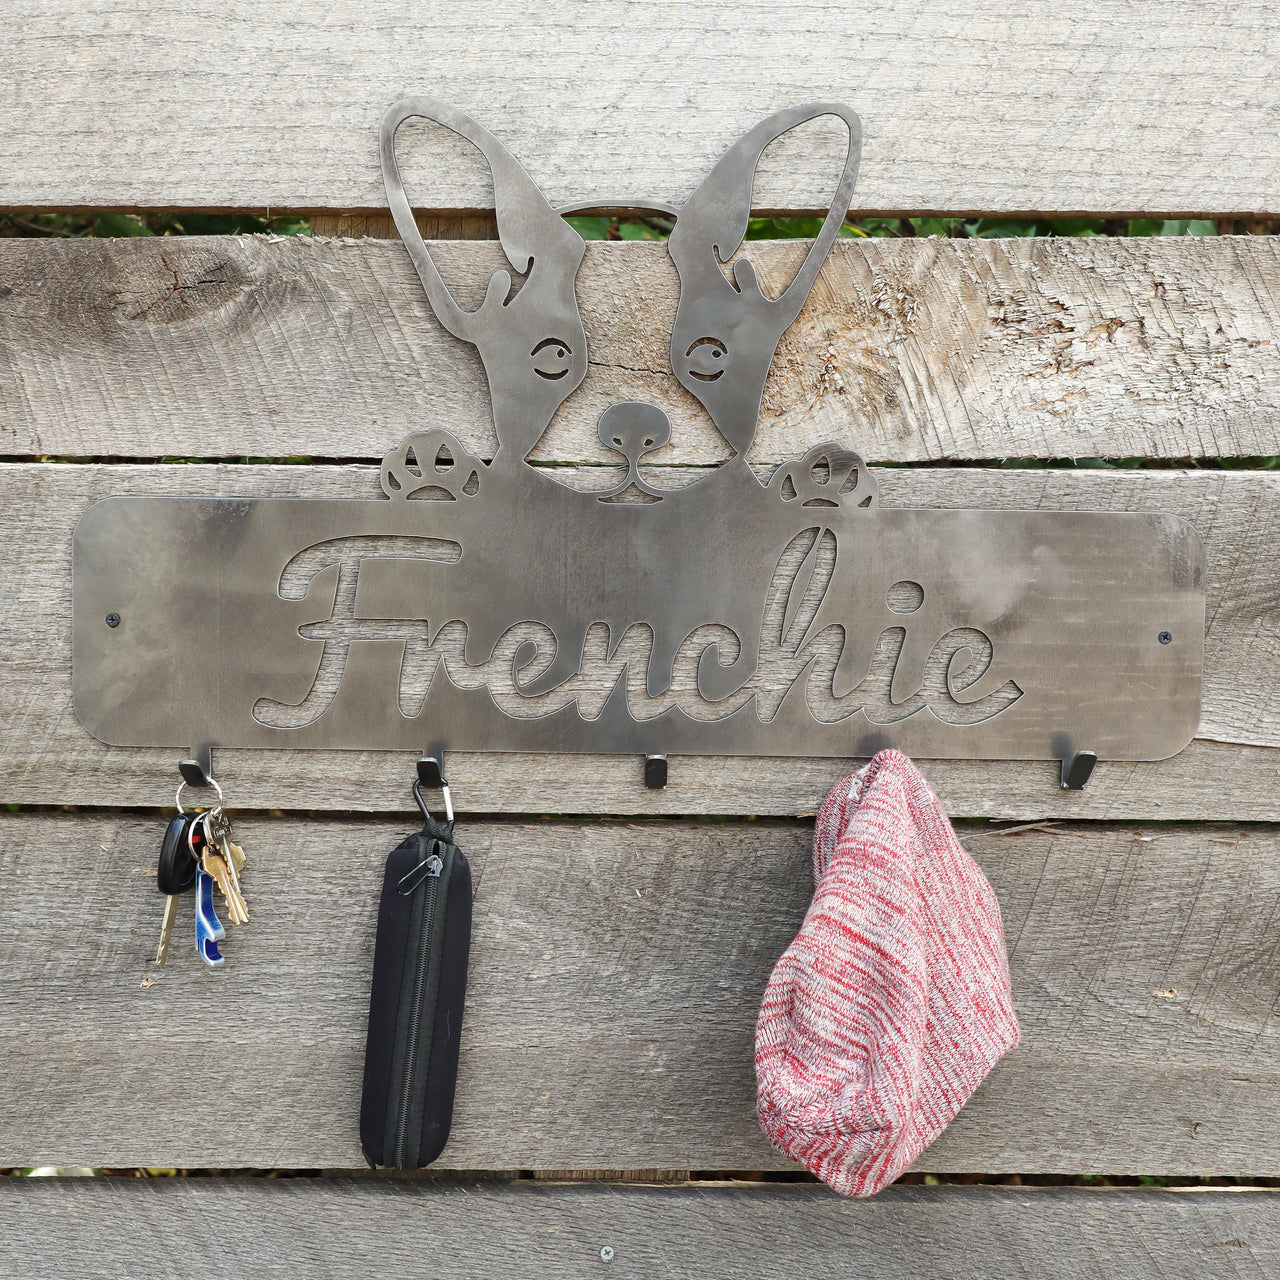 Puppy French Bulldog Coat Rack - Personalized Dog Leash Holder Hooks - Wall Mount Organization Decor